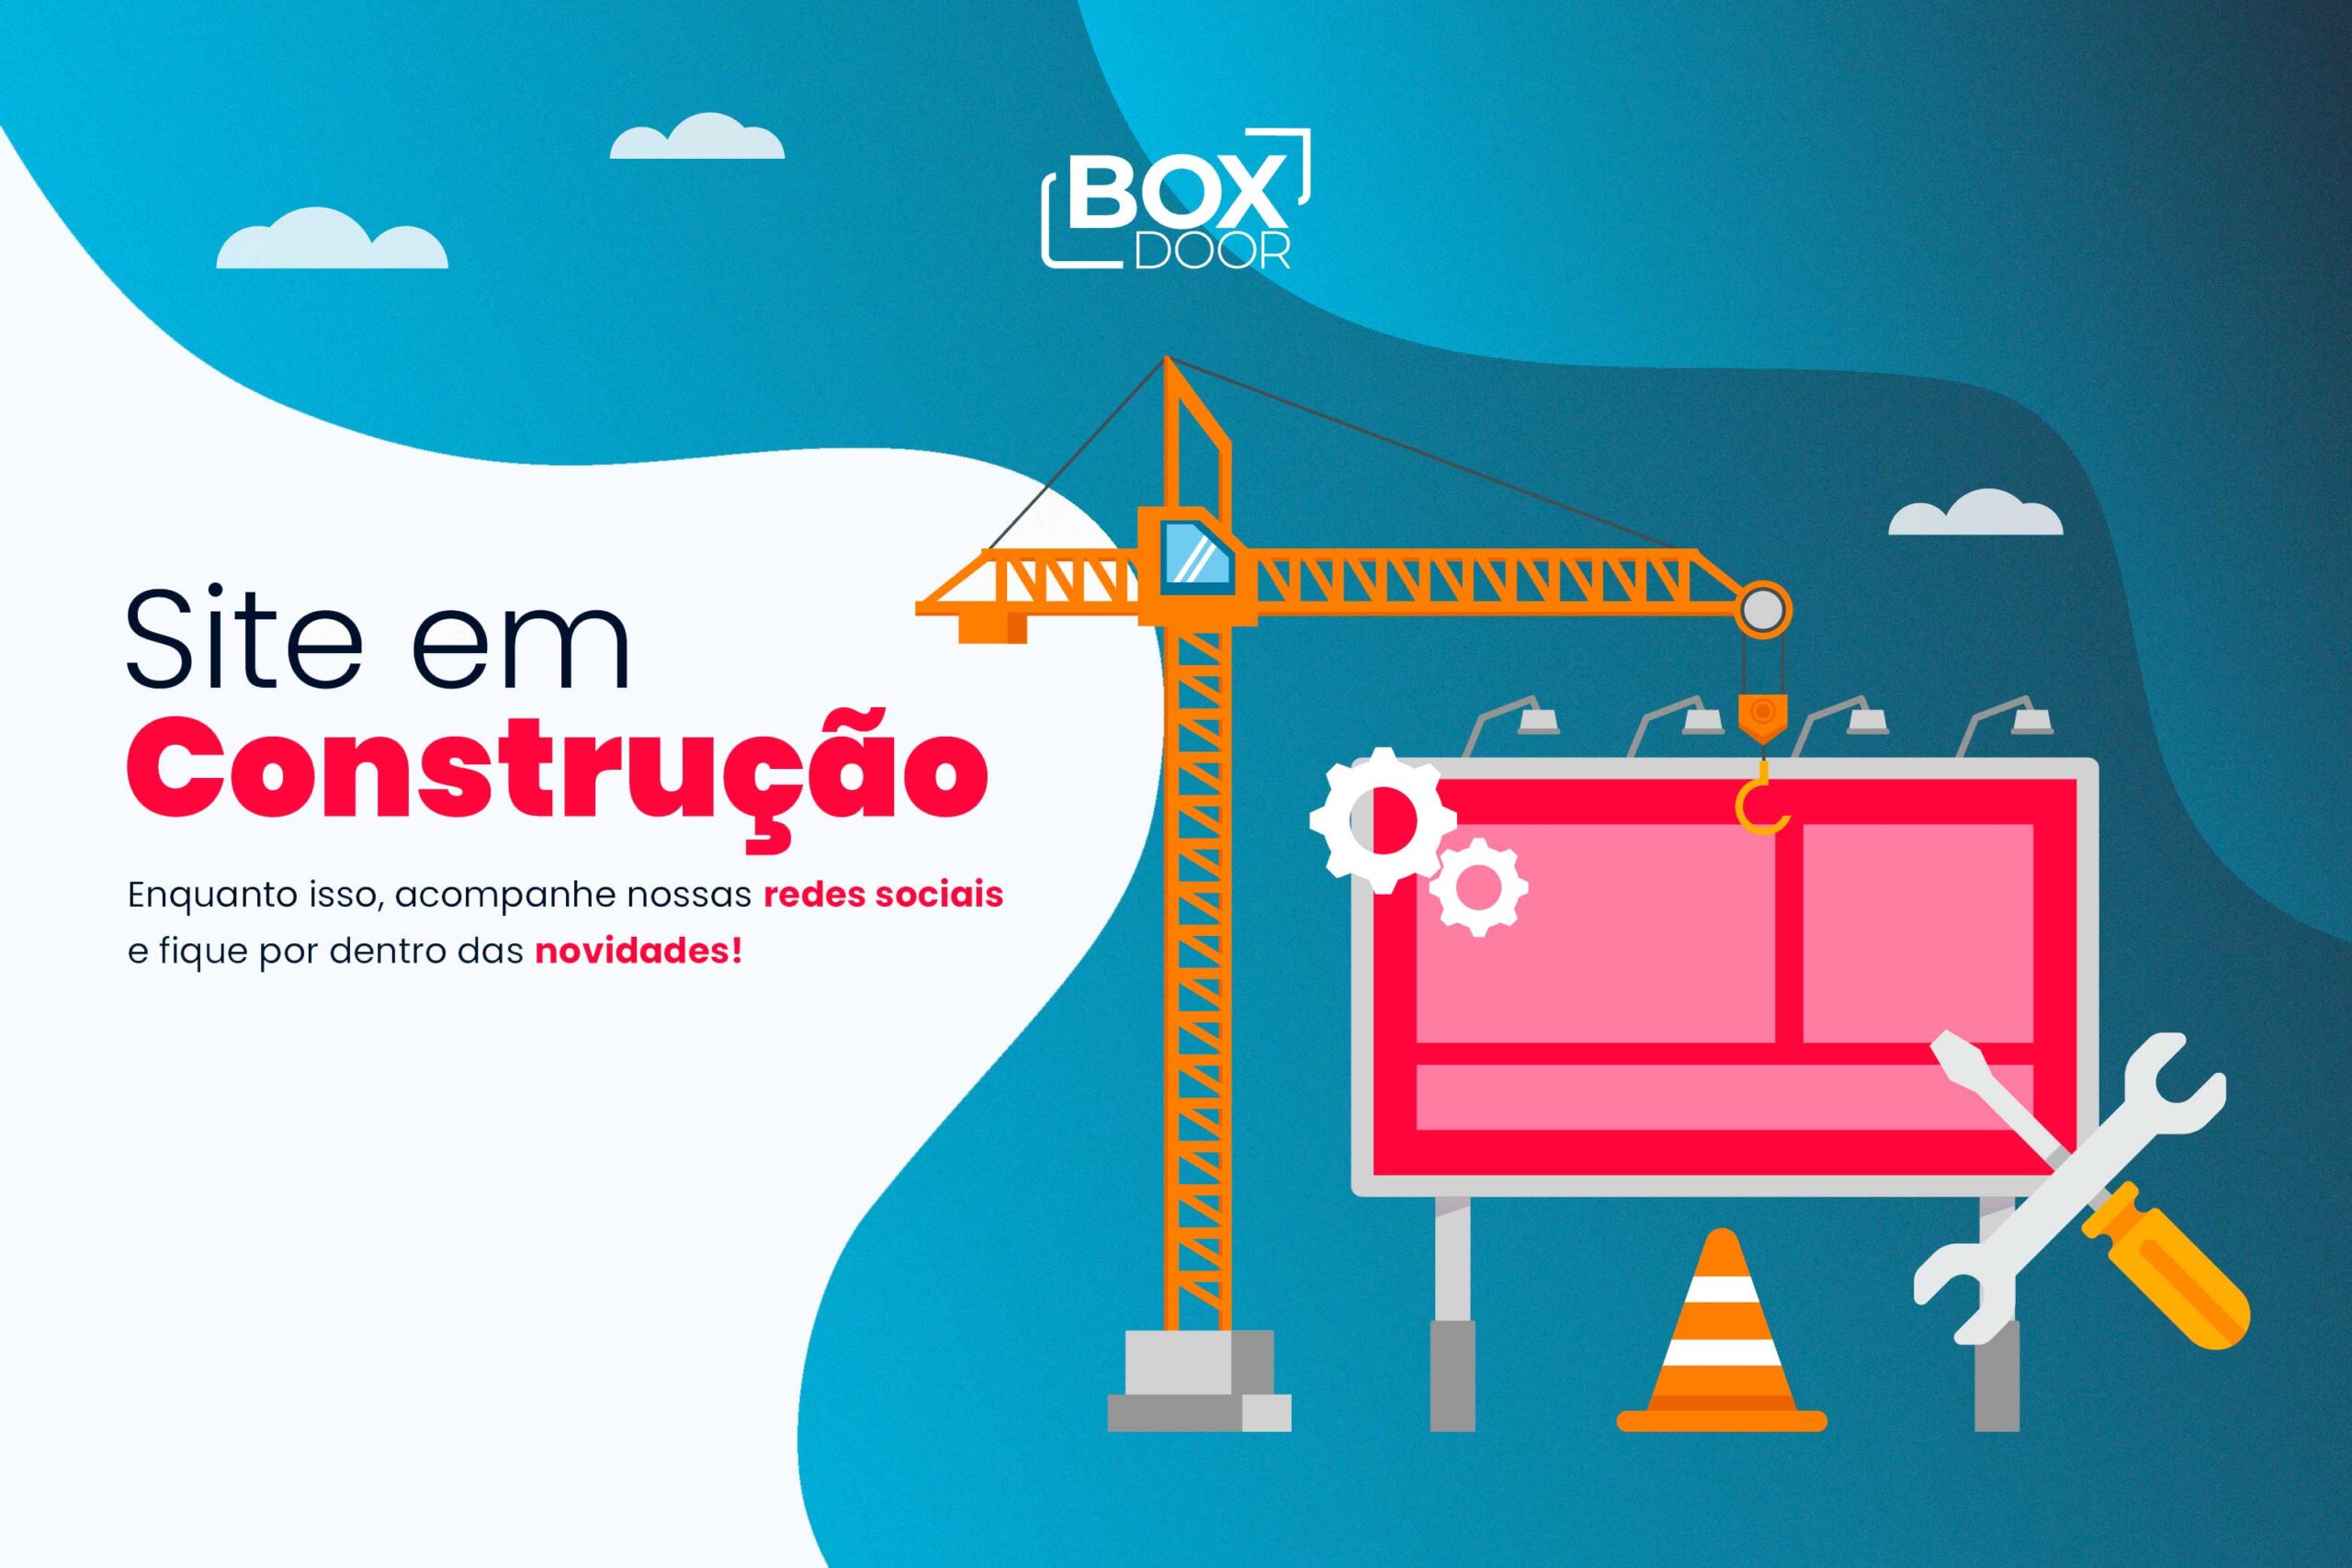 BoxDoor - Site em construção